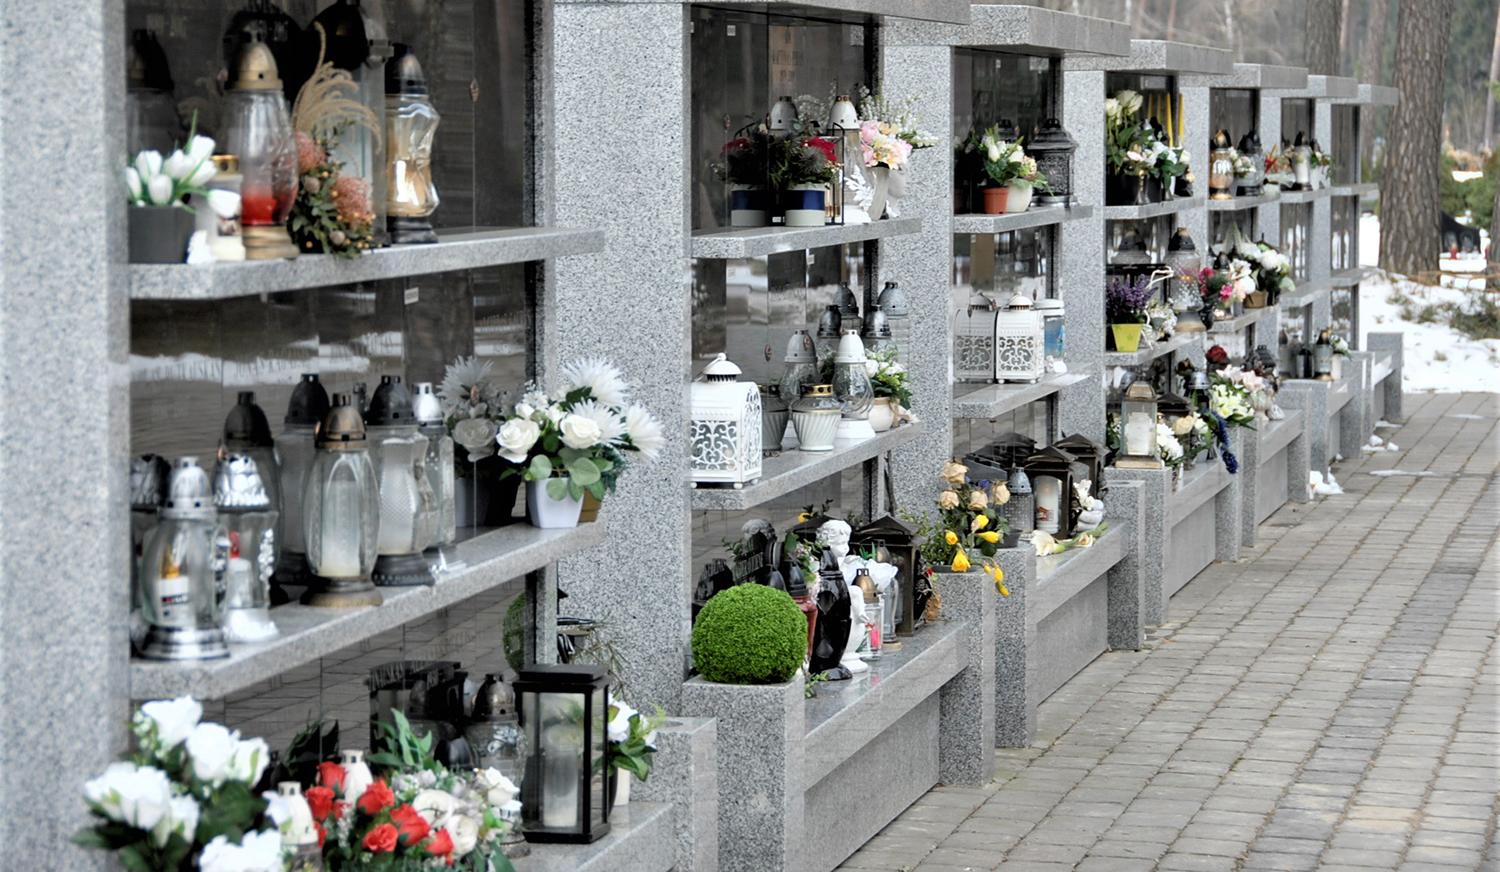 Pašilės kapinėse projektuojami kolumbariumai / Dukstynos kapinėse esančiuose kolumbariumuose nuolat dega žvakelės.  Gedimino Nemunaičio nuotr.